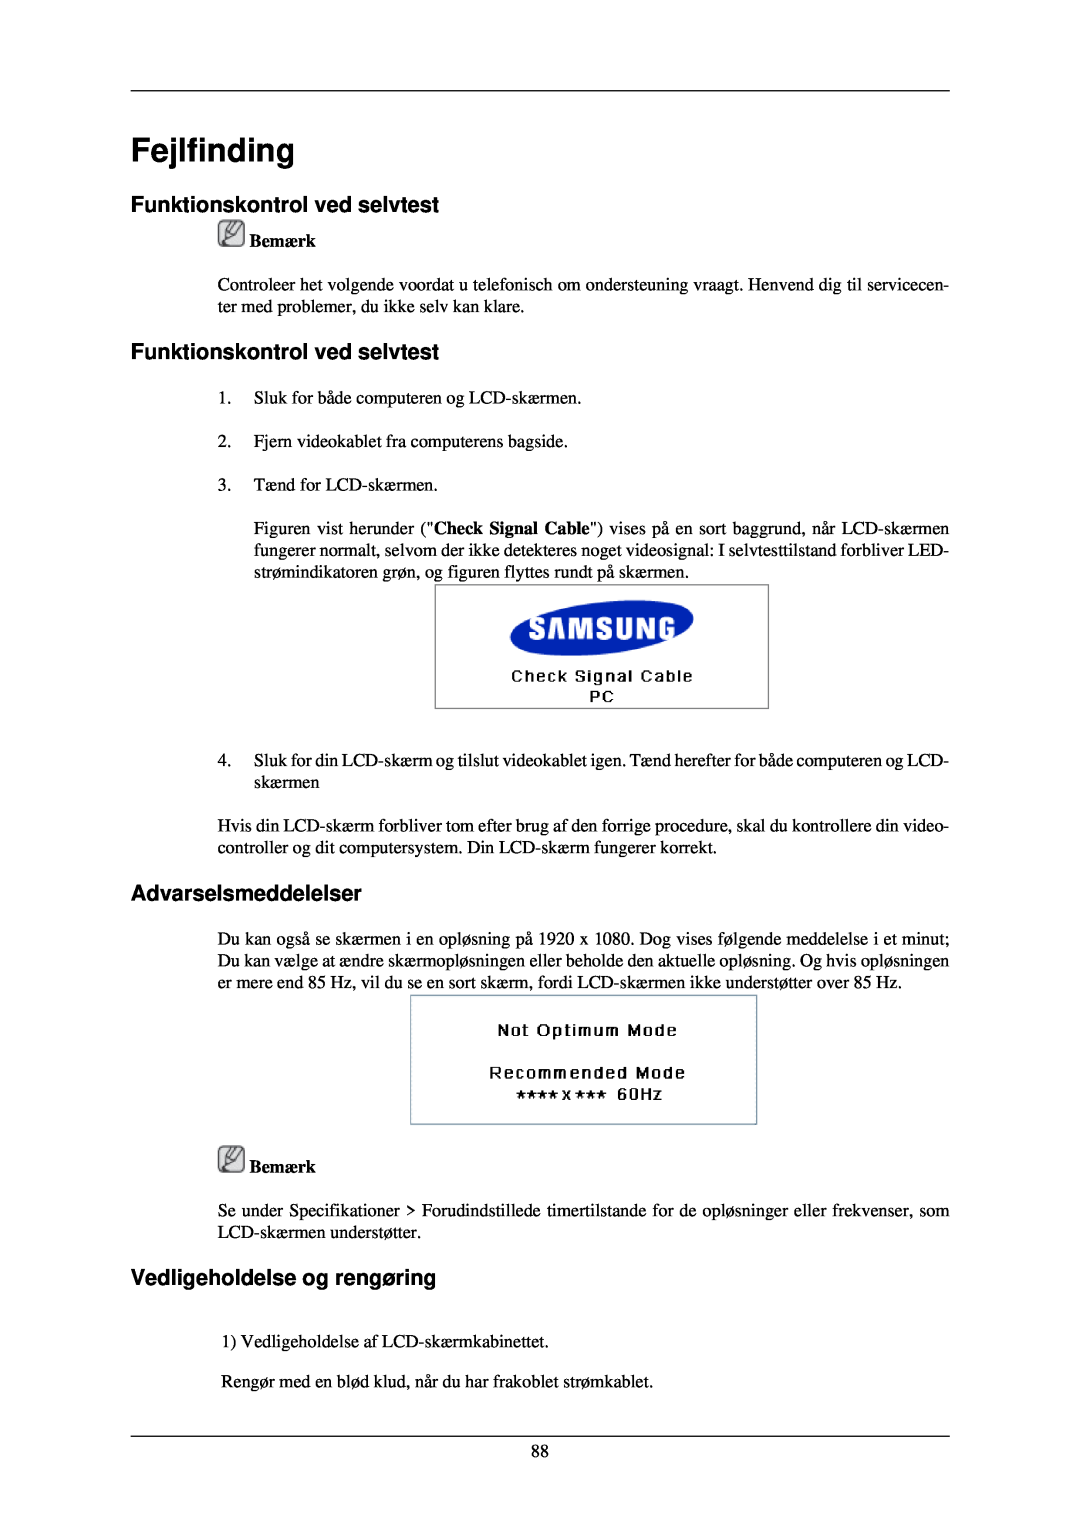 Samsung LH46TCUMBG/EN manual Fejlfinding, Funktionskontrol ved selvtest, Advarselsmeddelelser, Vedligeholdelse og rengøring 